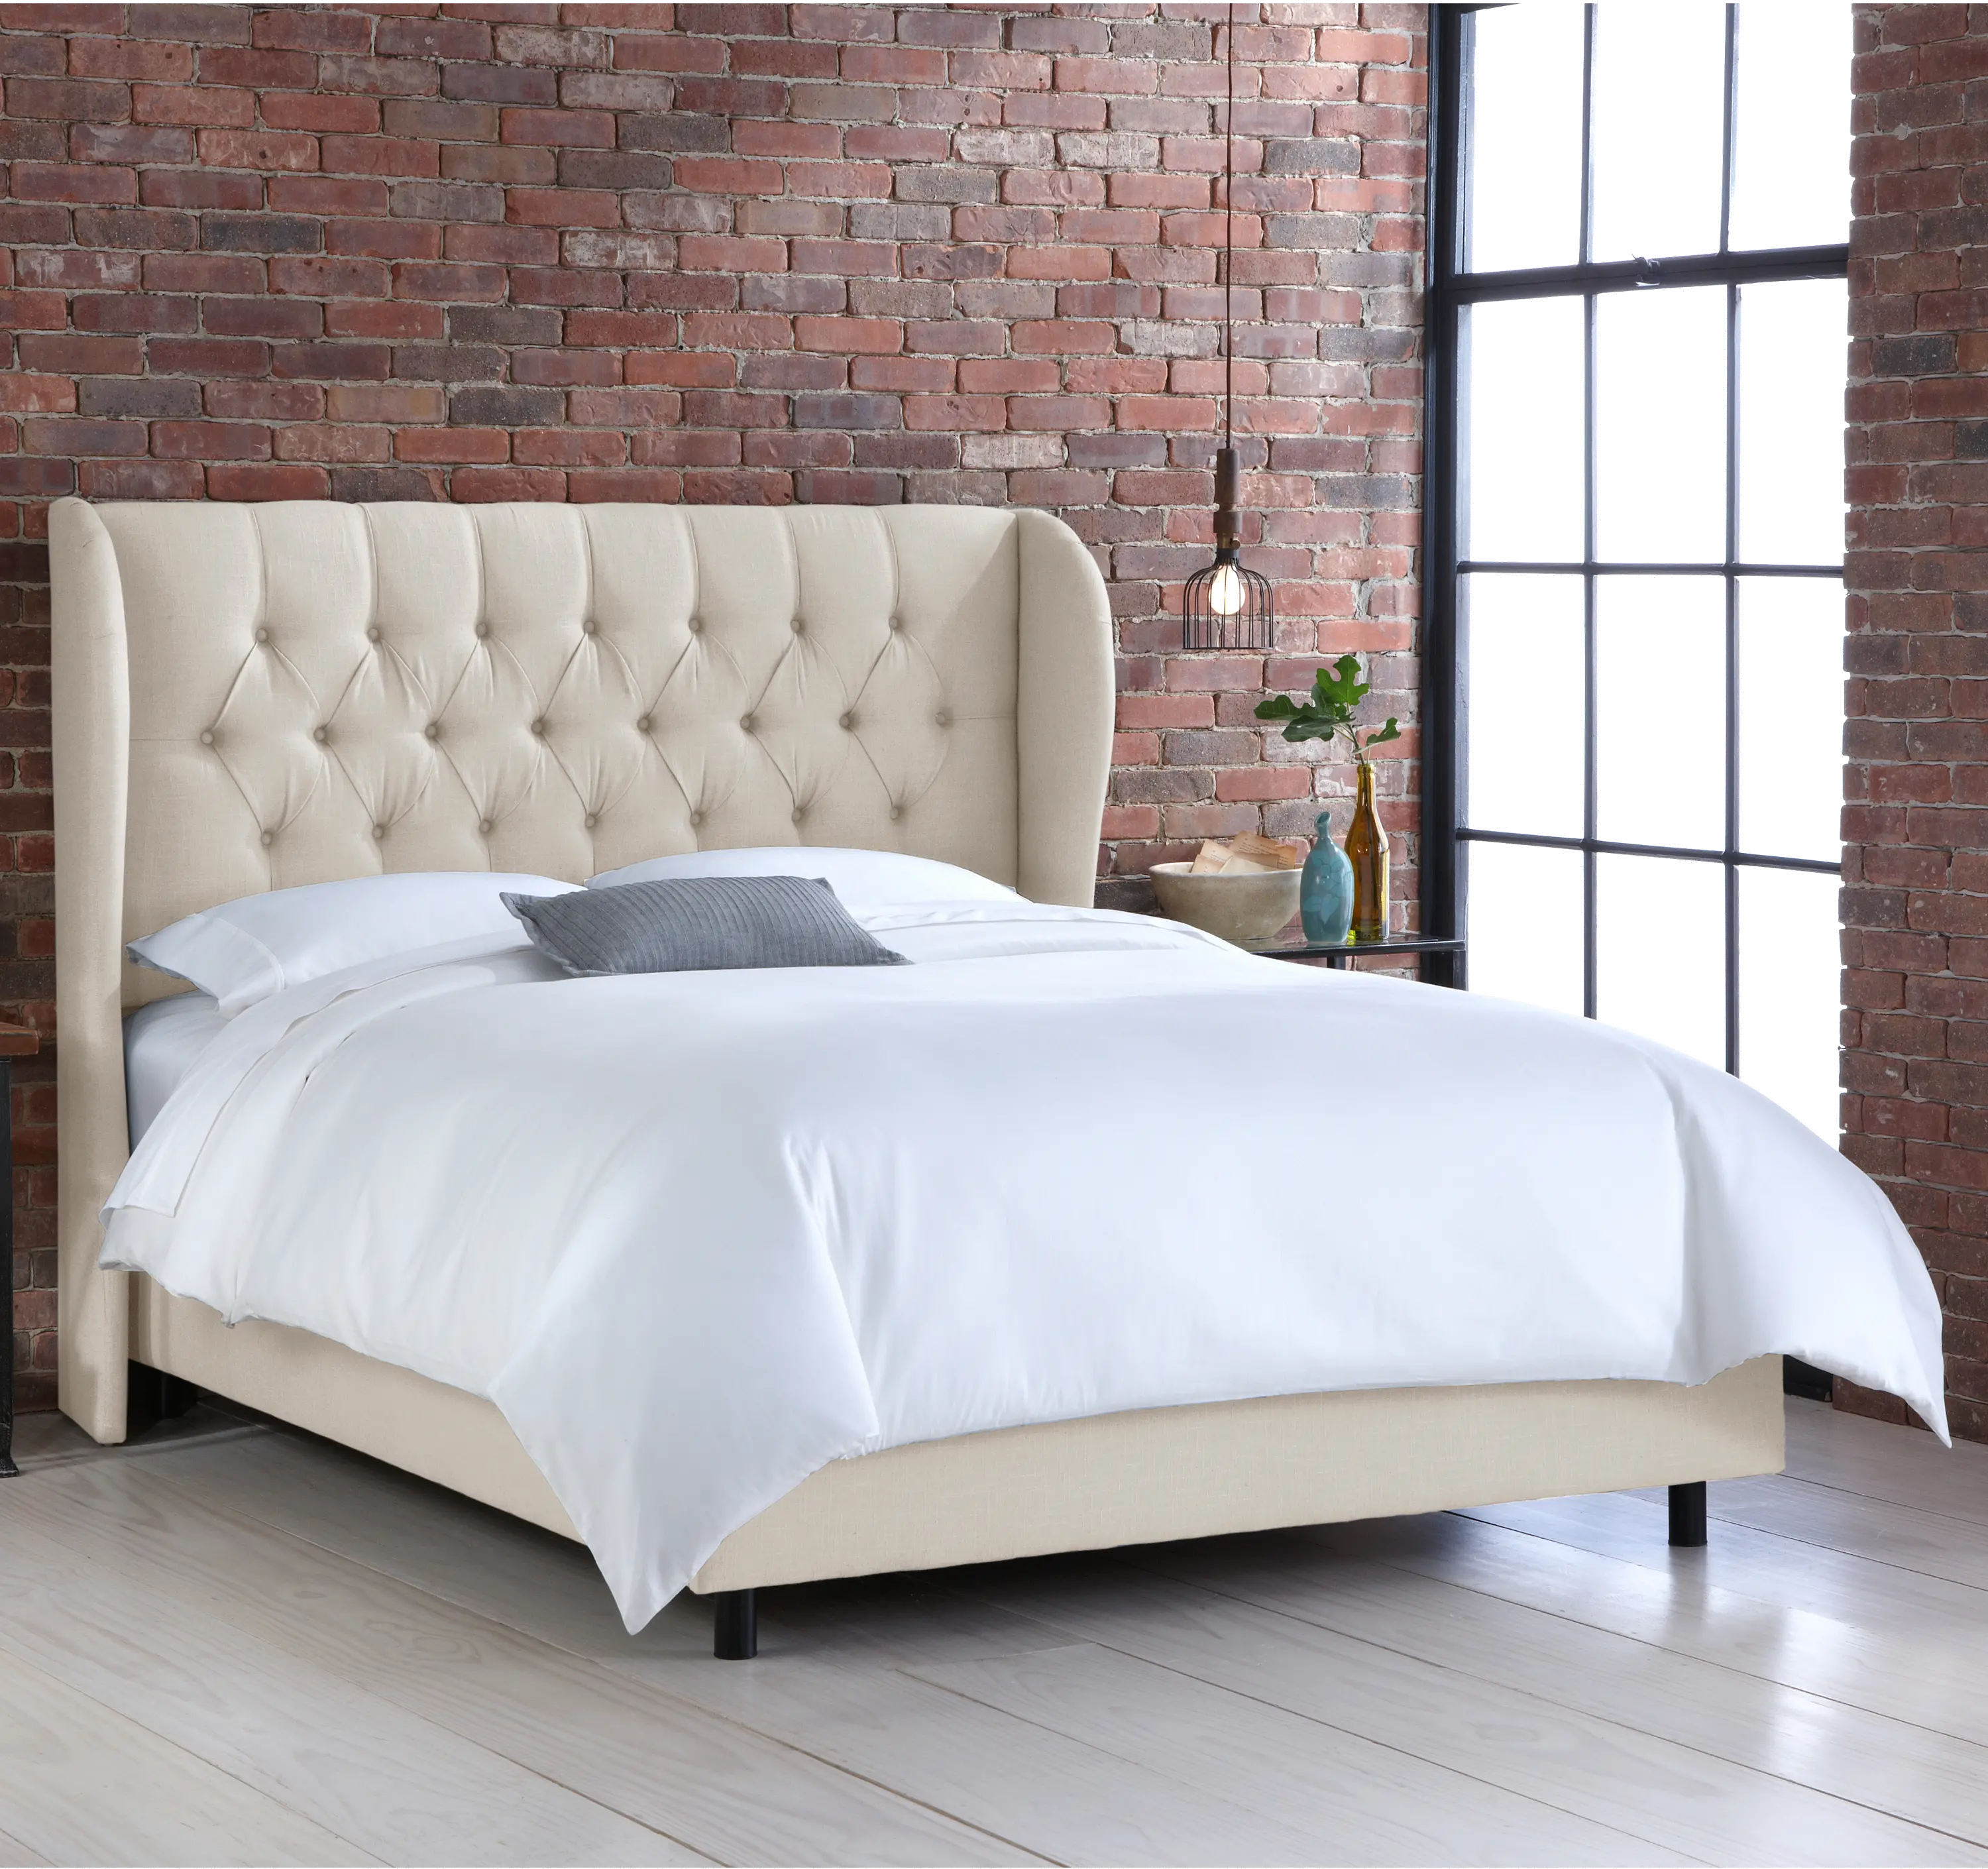 Izzy Cream Sloped Wingback Full Bed - Skyline Furniture